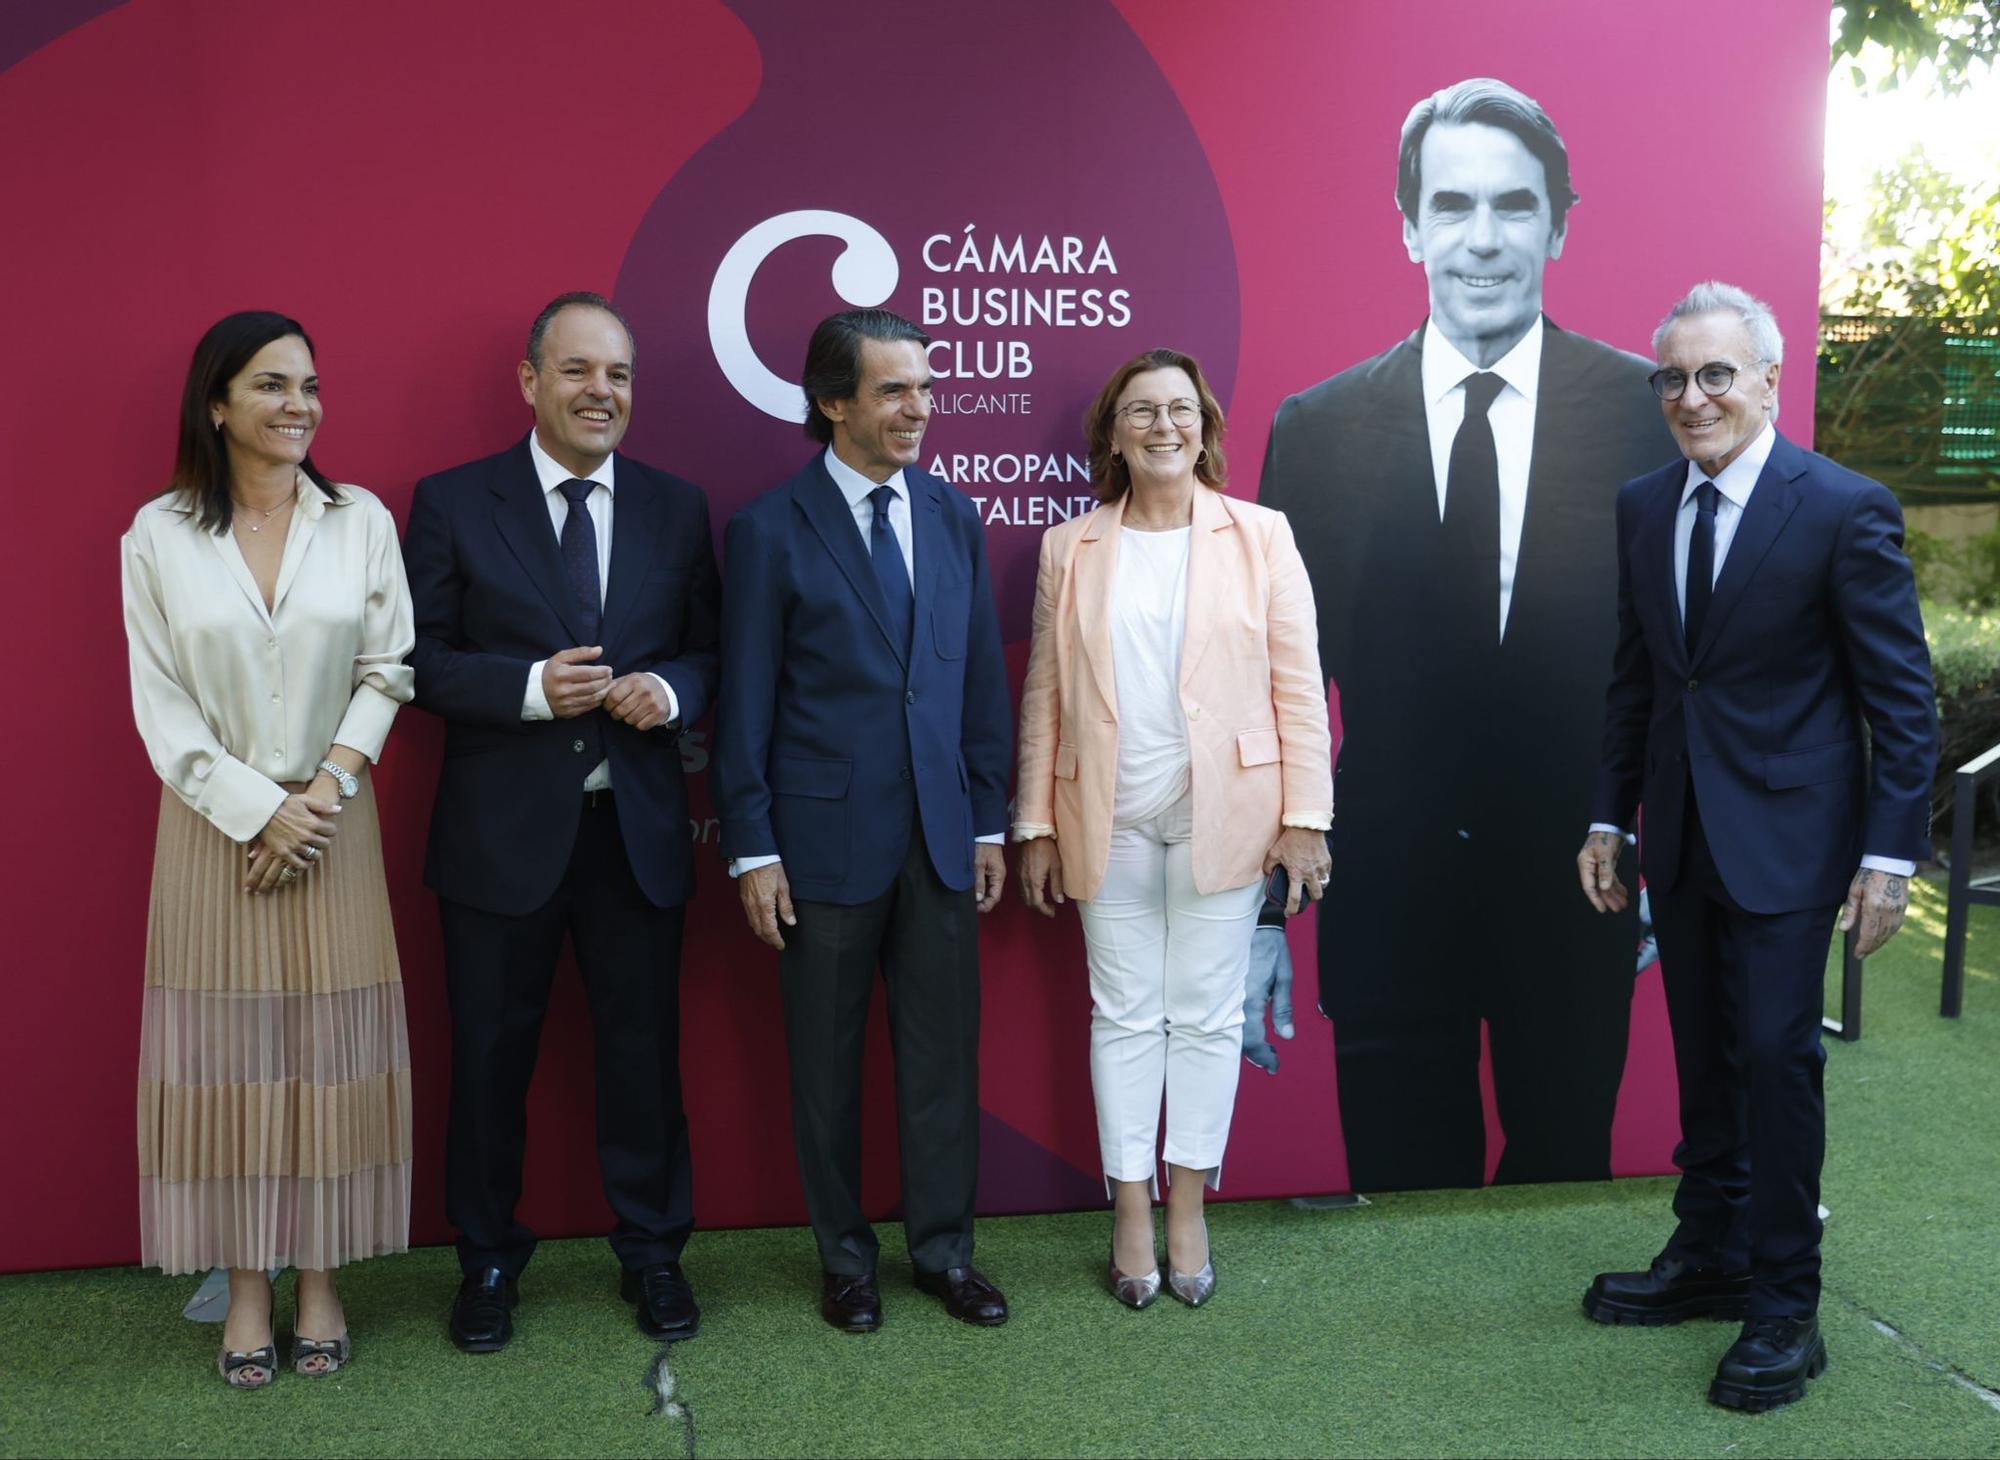 José María Aznar analiza la incertidumbre de la política nacional e internacional en un acto celebrado en Alicante